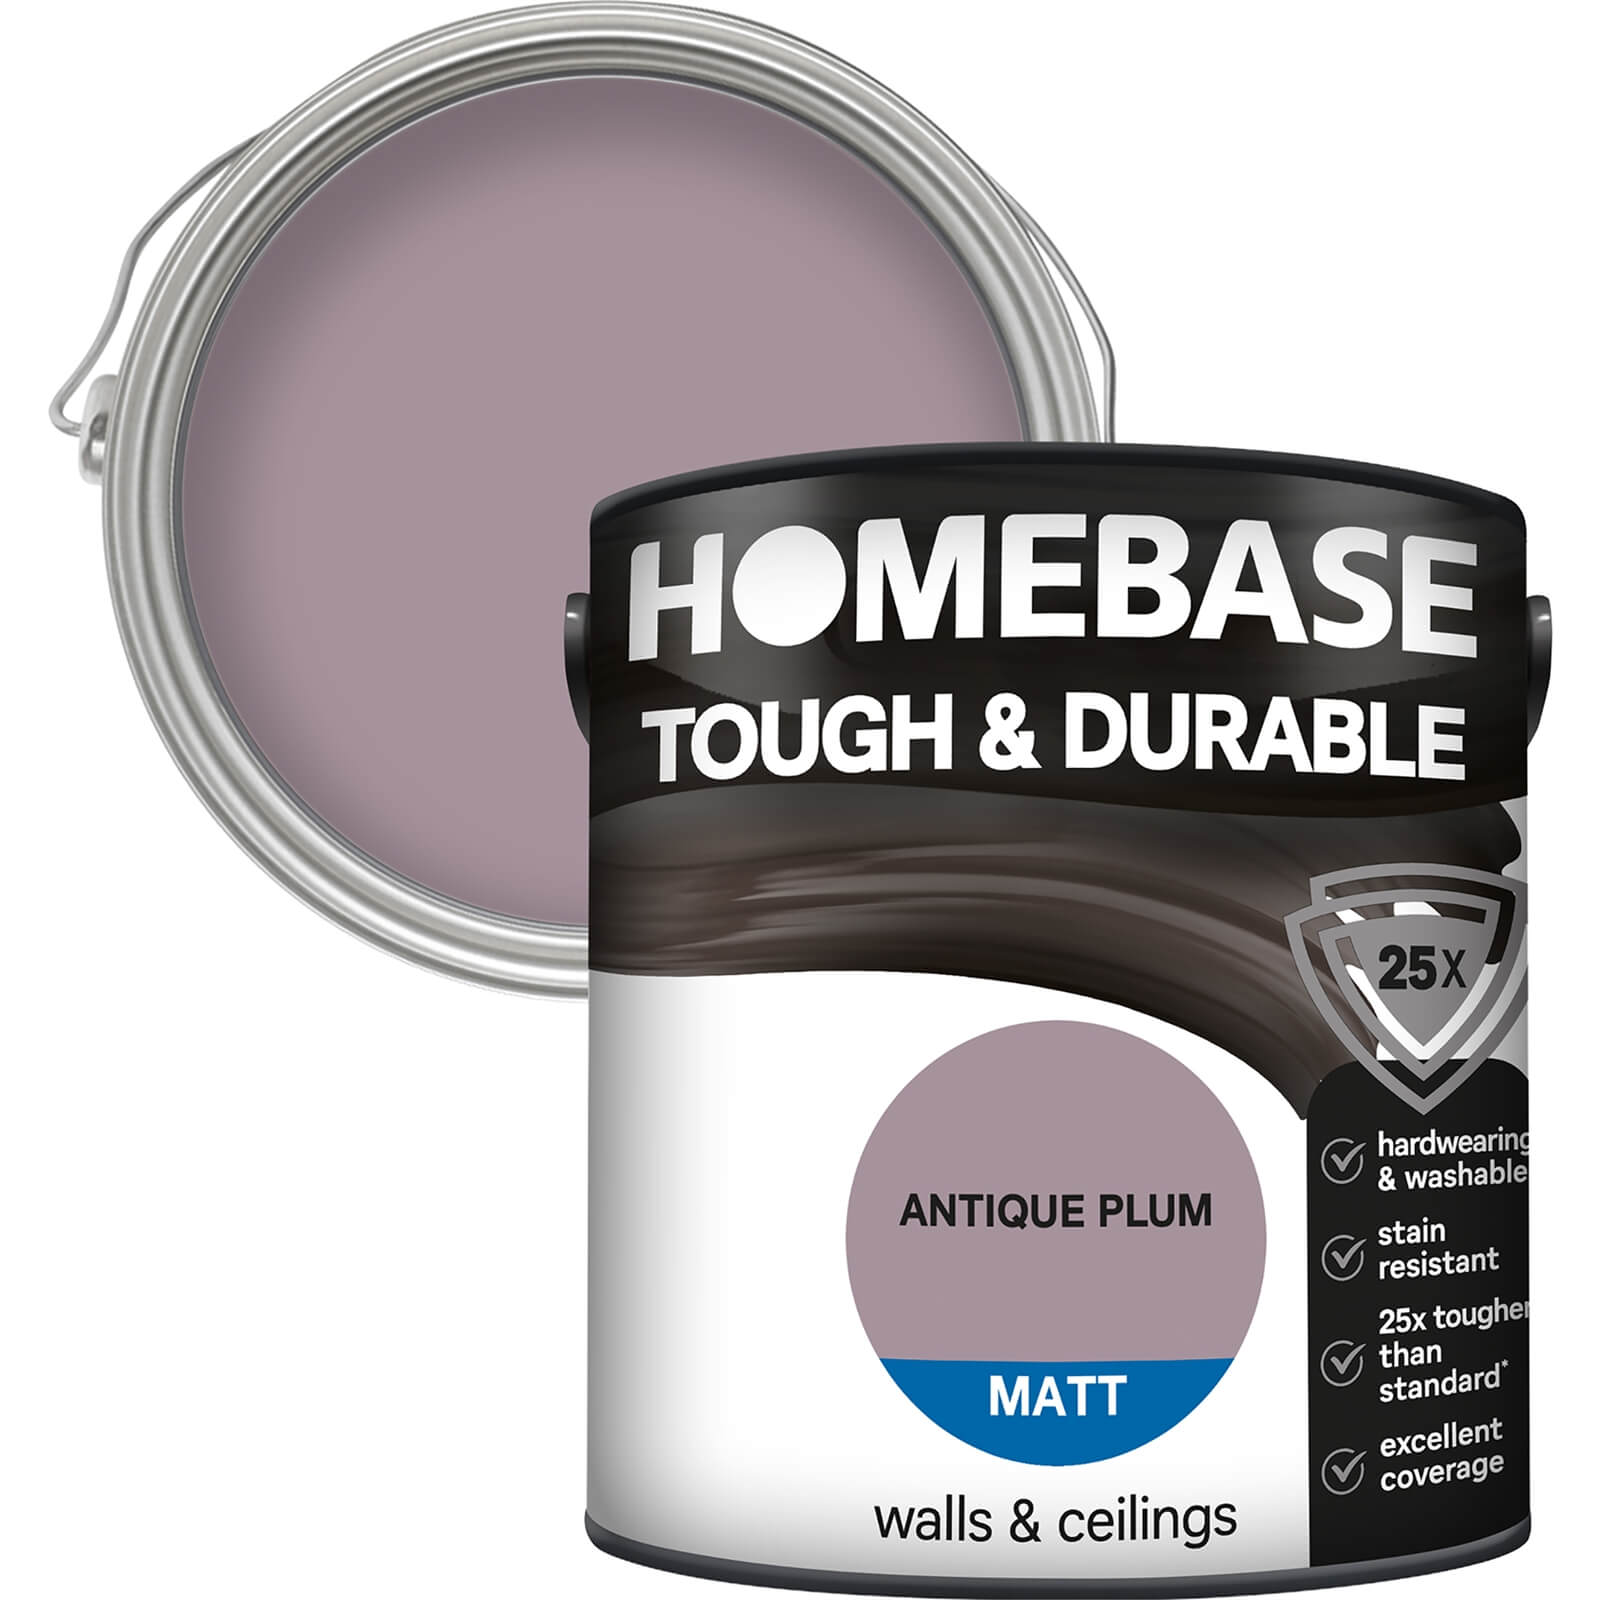 Homebase Tough & Durable Matt Emulsion Paint Antique Plum - 2.5L